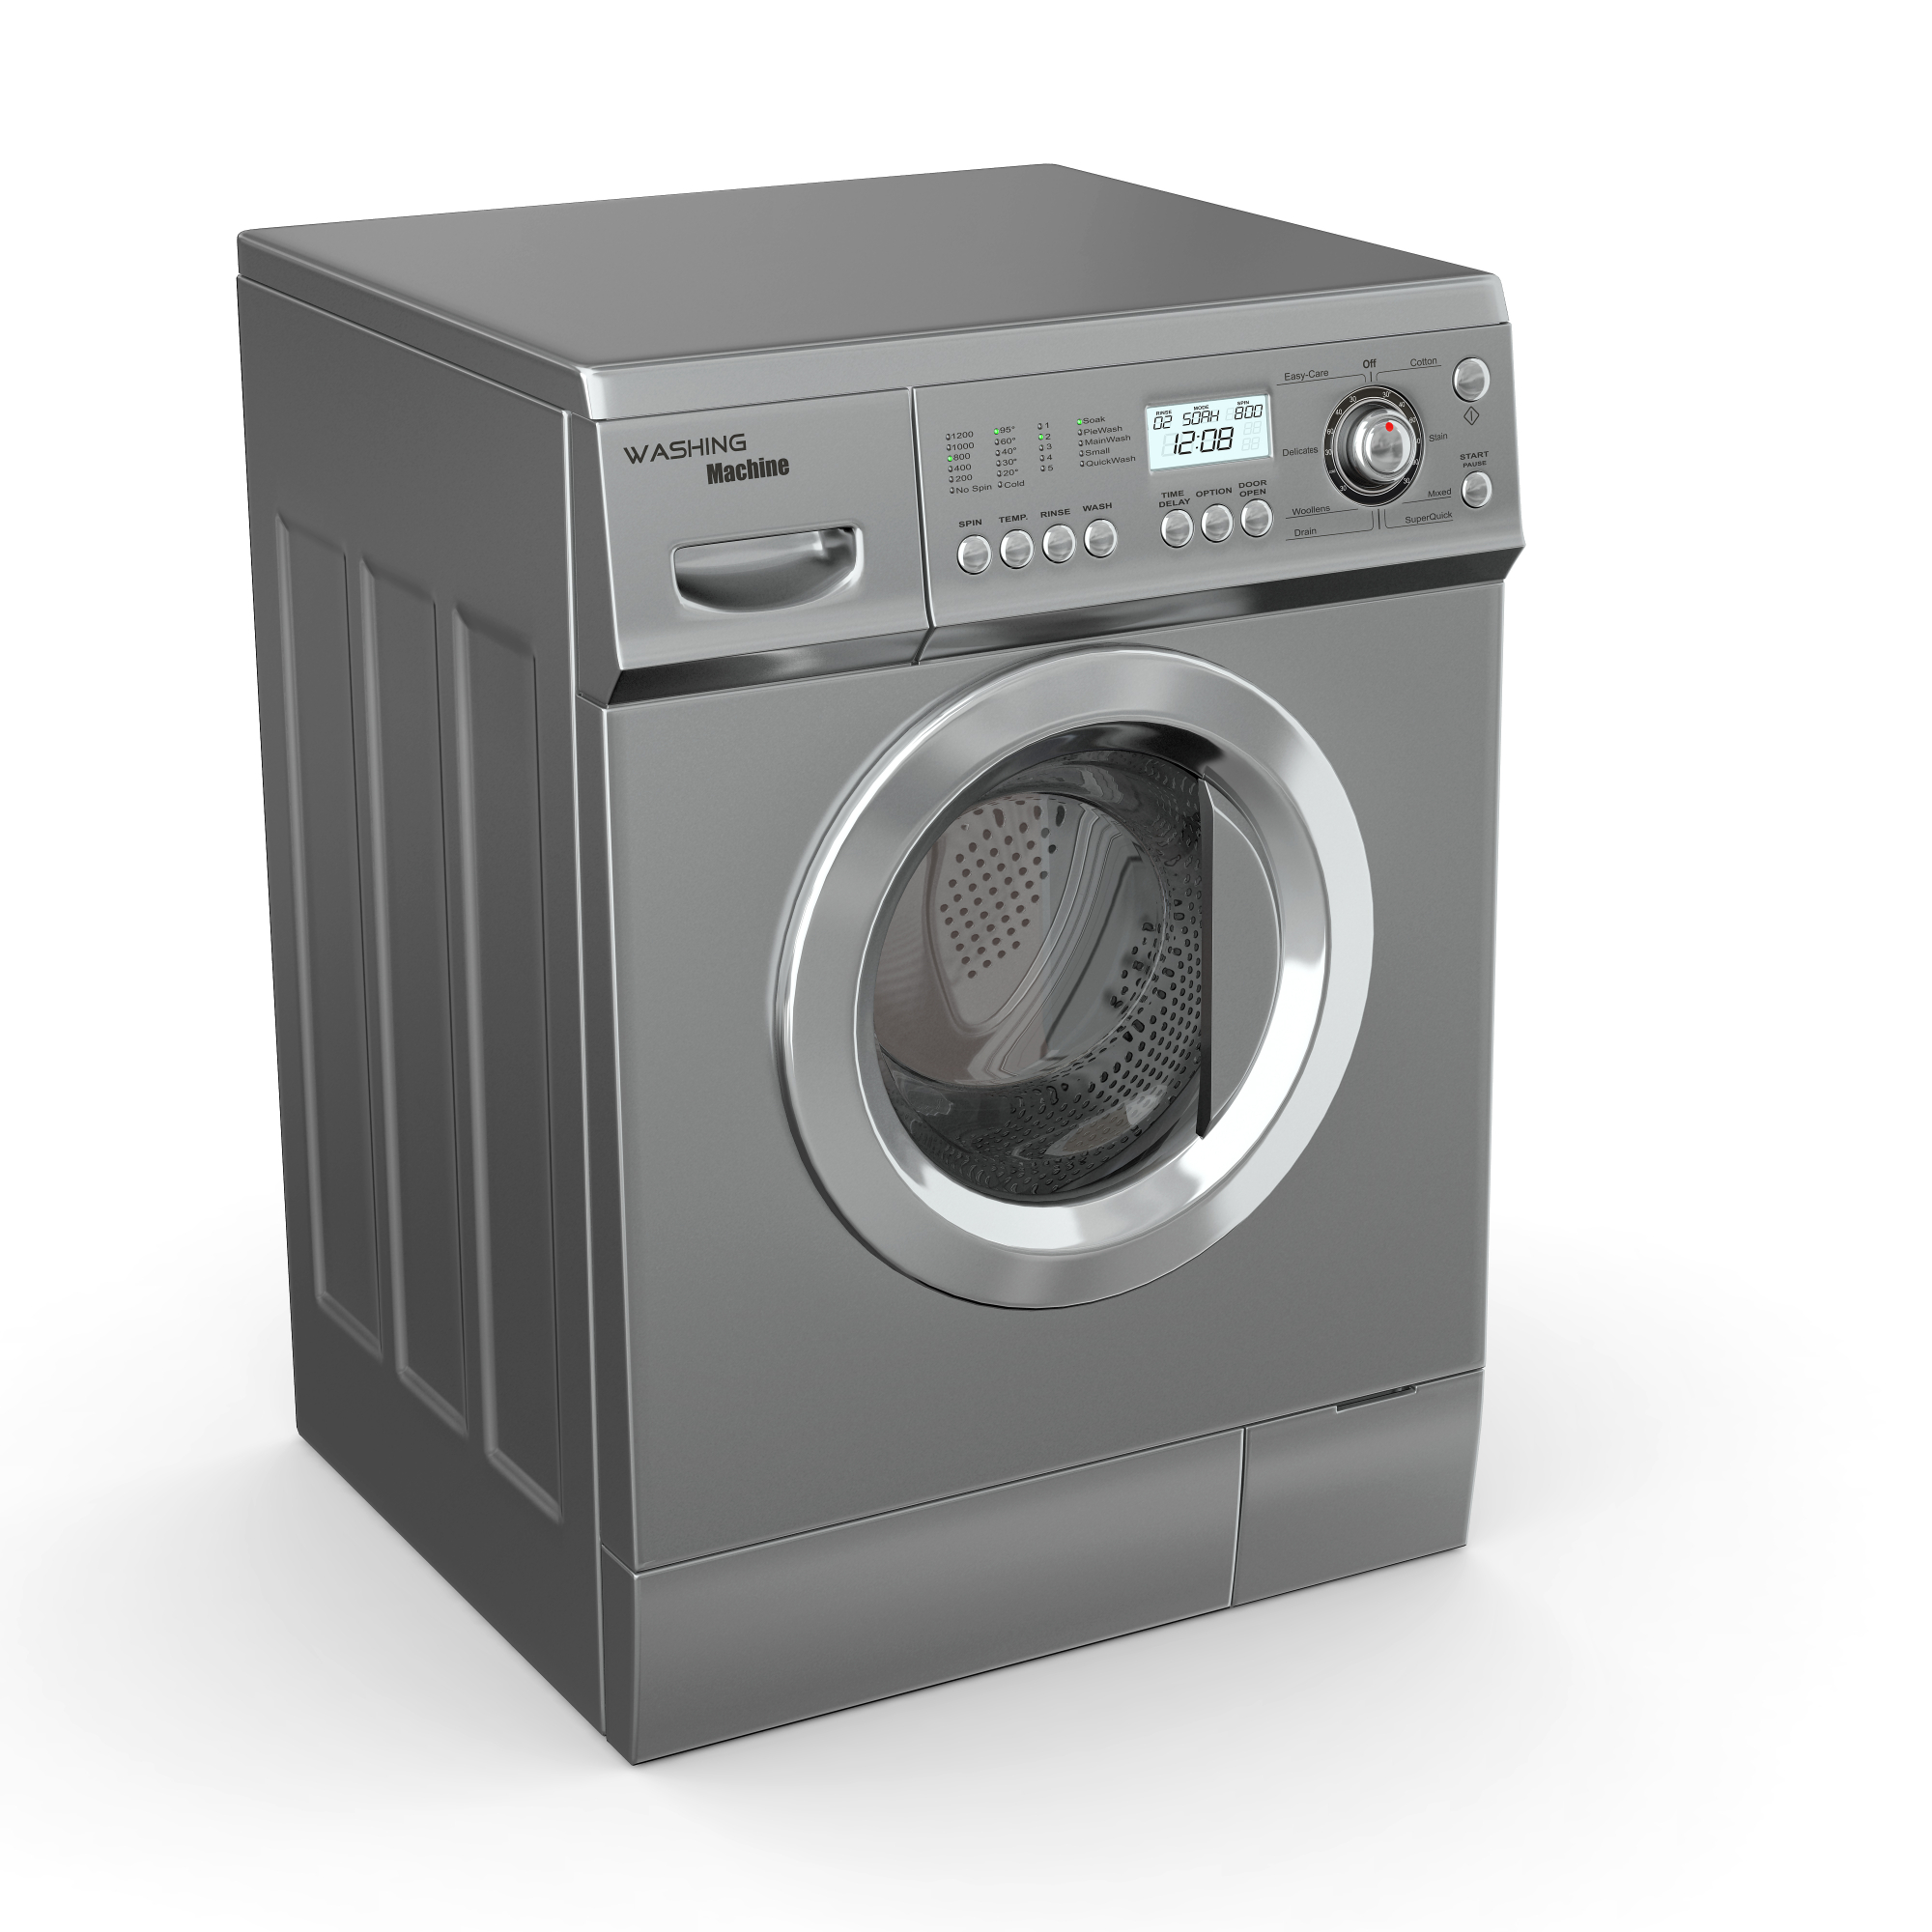 Skupni pralni stroji v kleti so tudi lahko odlična rešitev